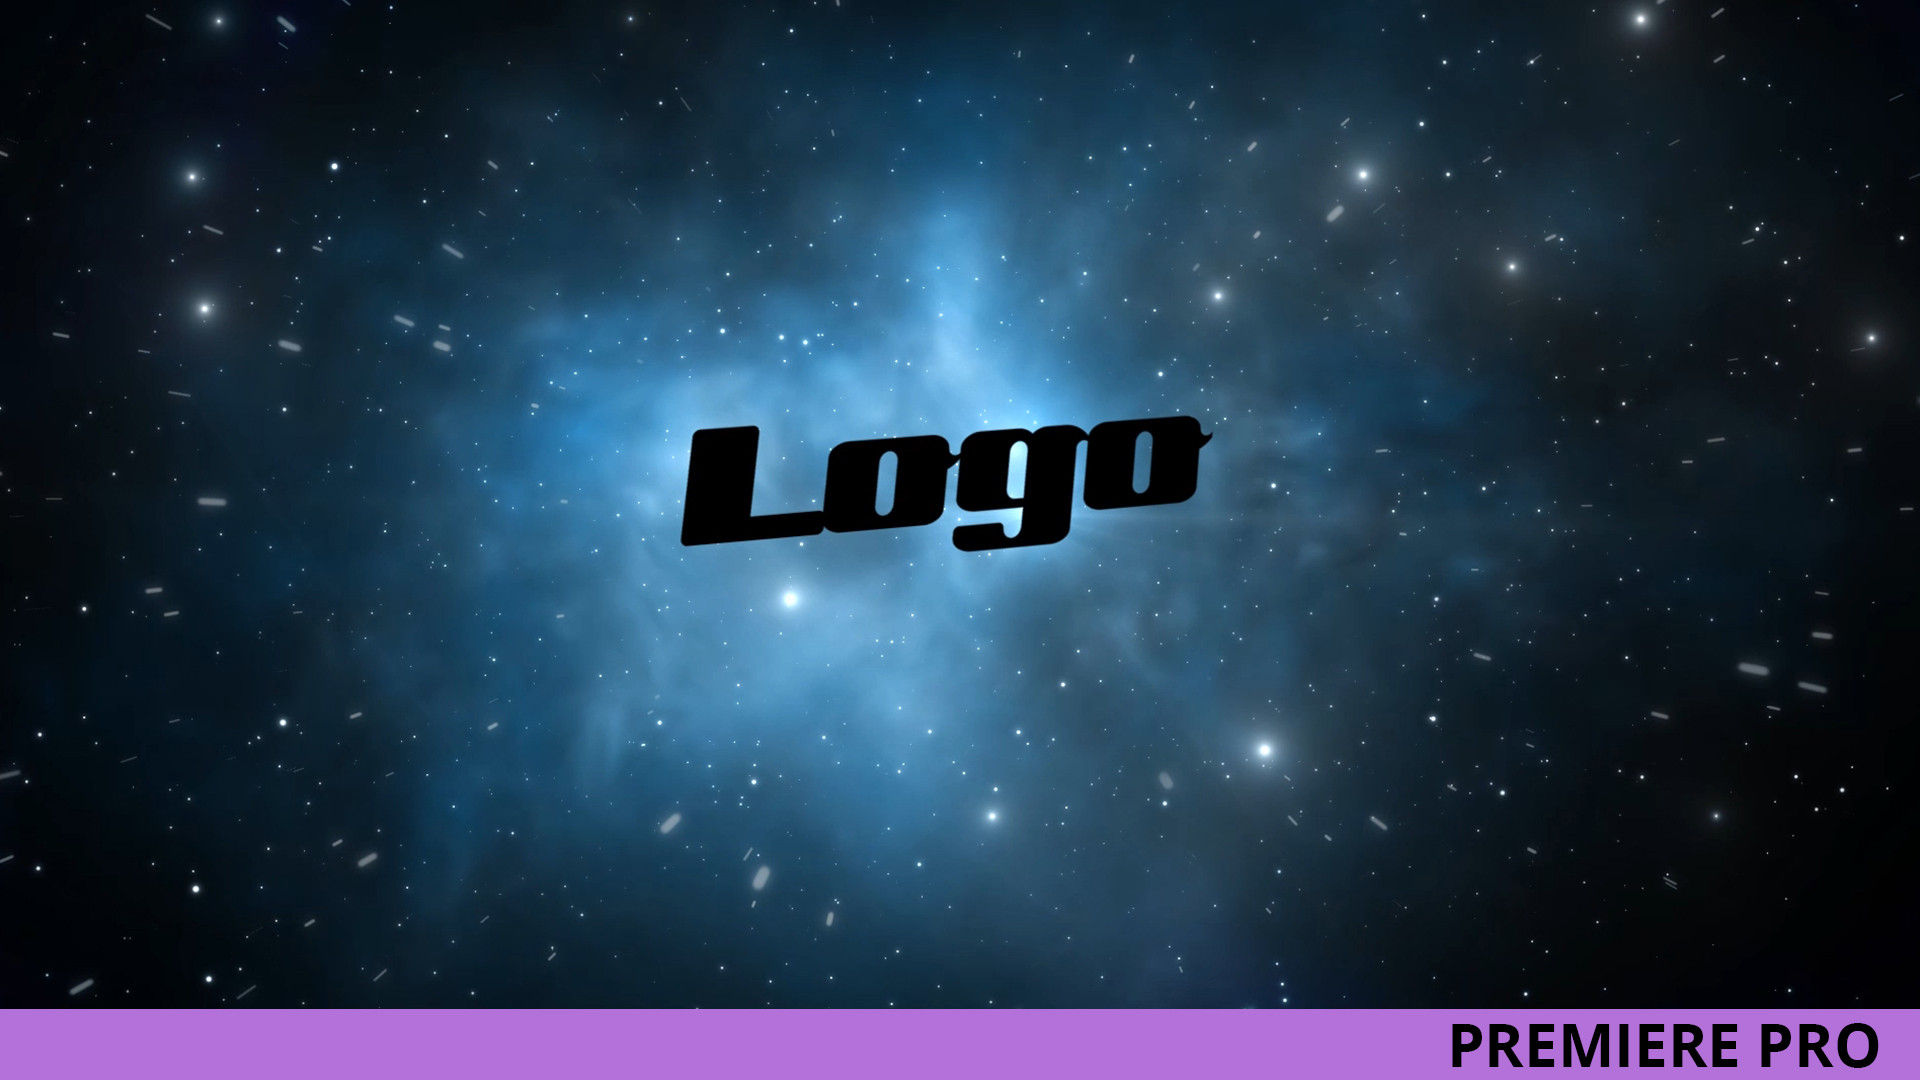 银河系太空标志LOGO展示亿图网易图库推荐PR模板